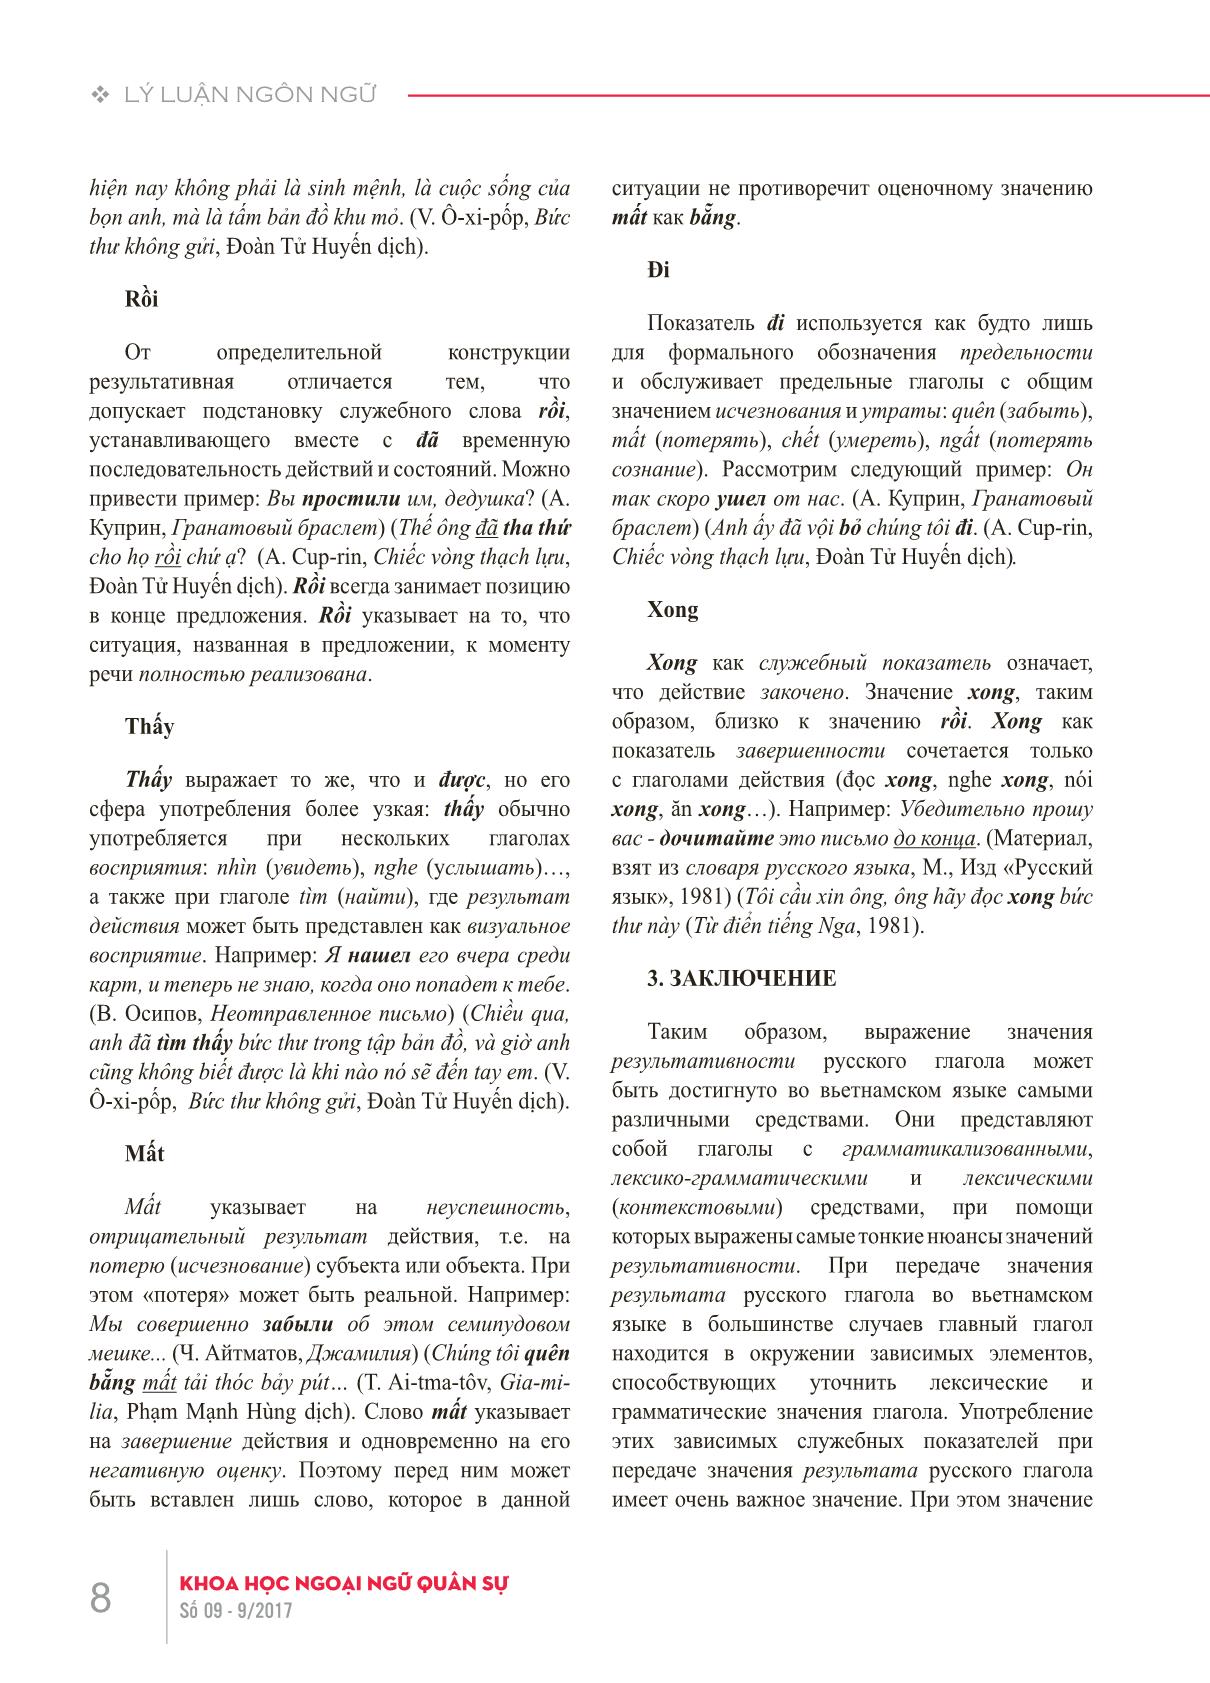 Động từ tiếng Nga thể hoàn thành biểu thị nghĩa kết quả hành động và phương thức biểu đạt tương ứng trong tiếng Việt trang 6